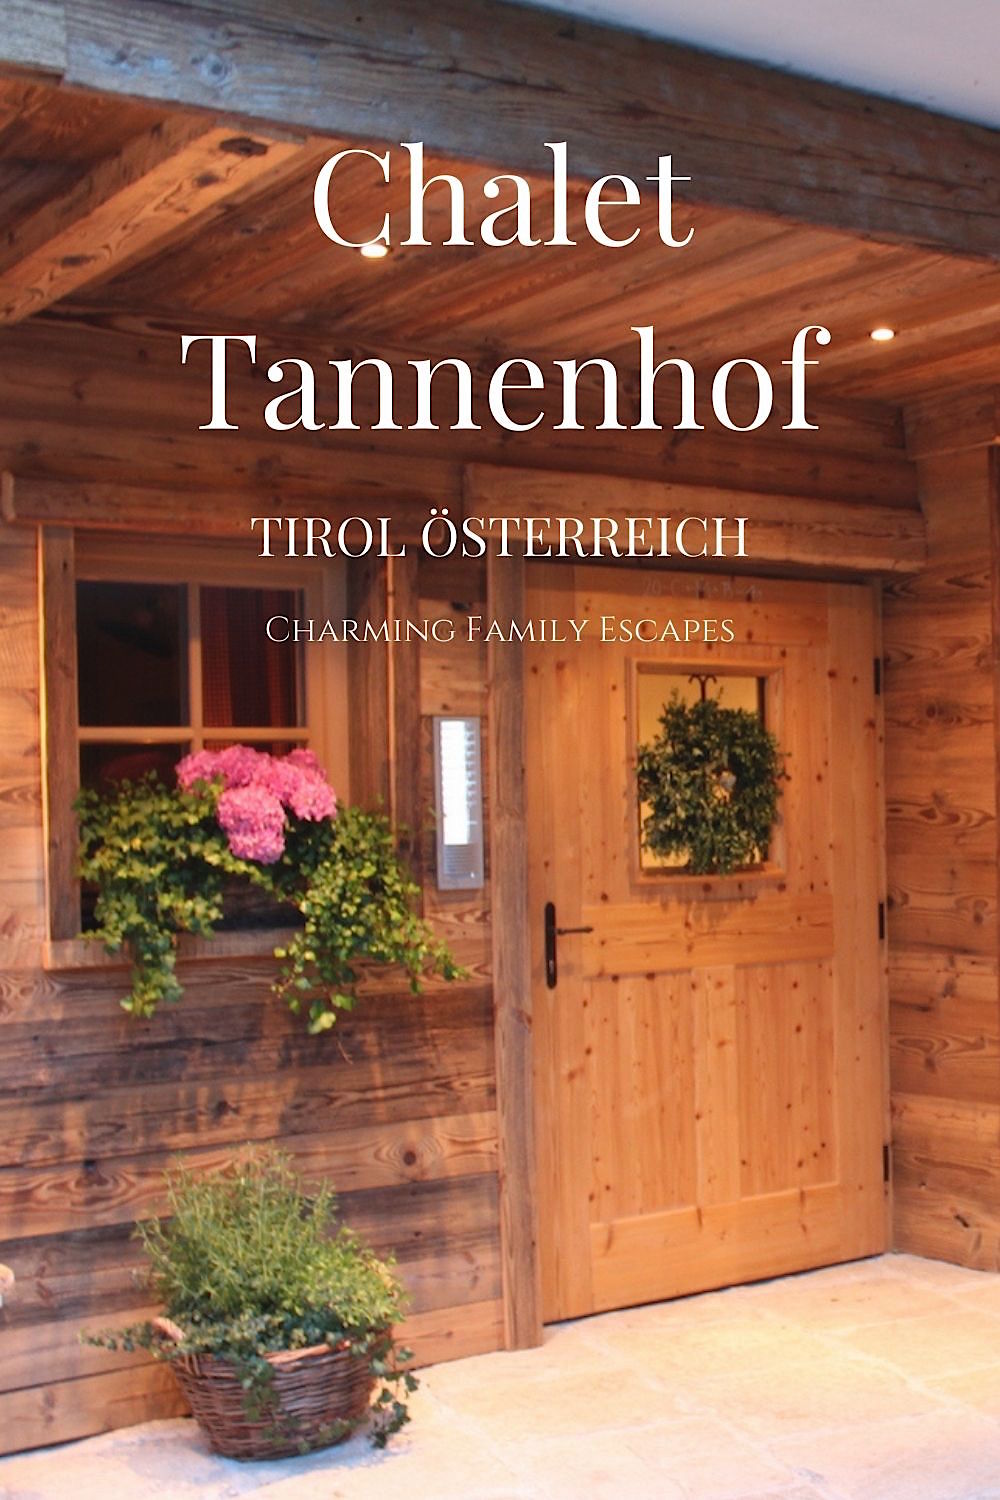 Chalet Tannenhof, Ferienwohnungen in Lermoos, Tirol